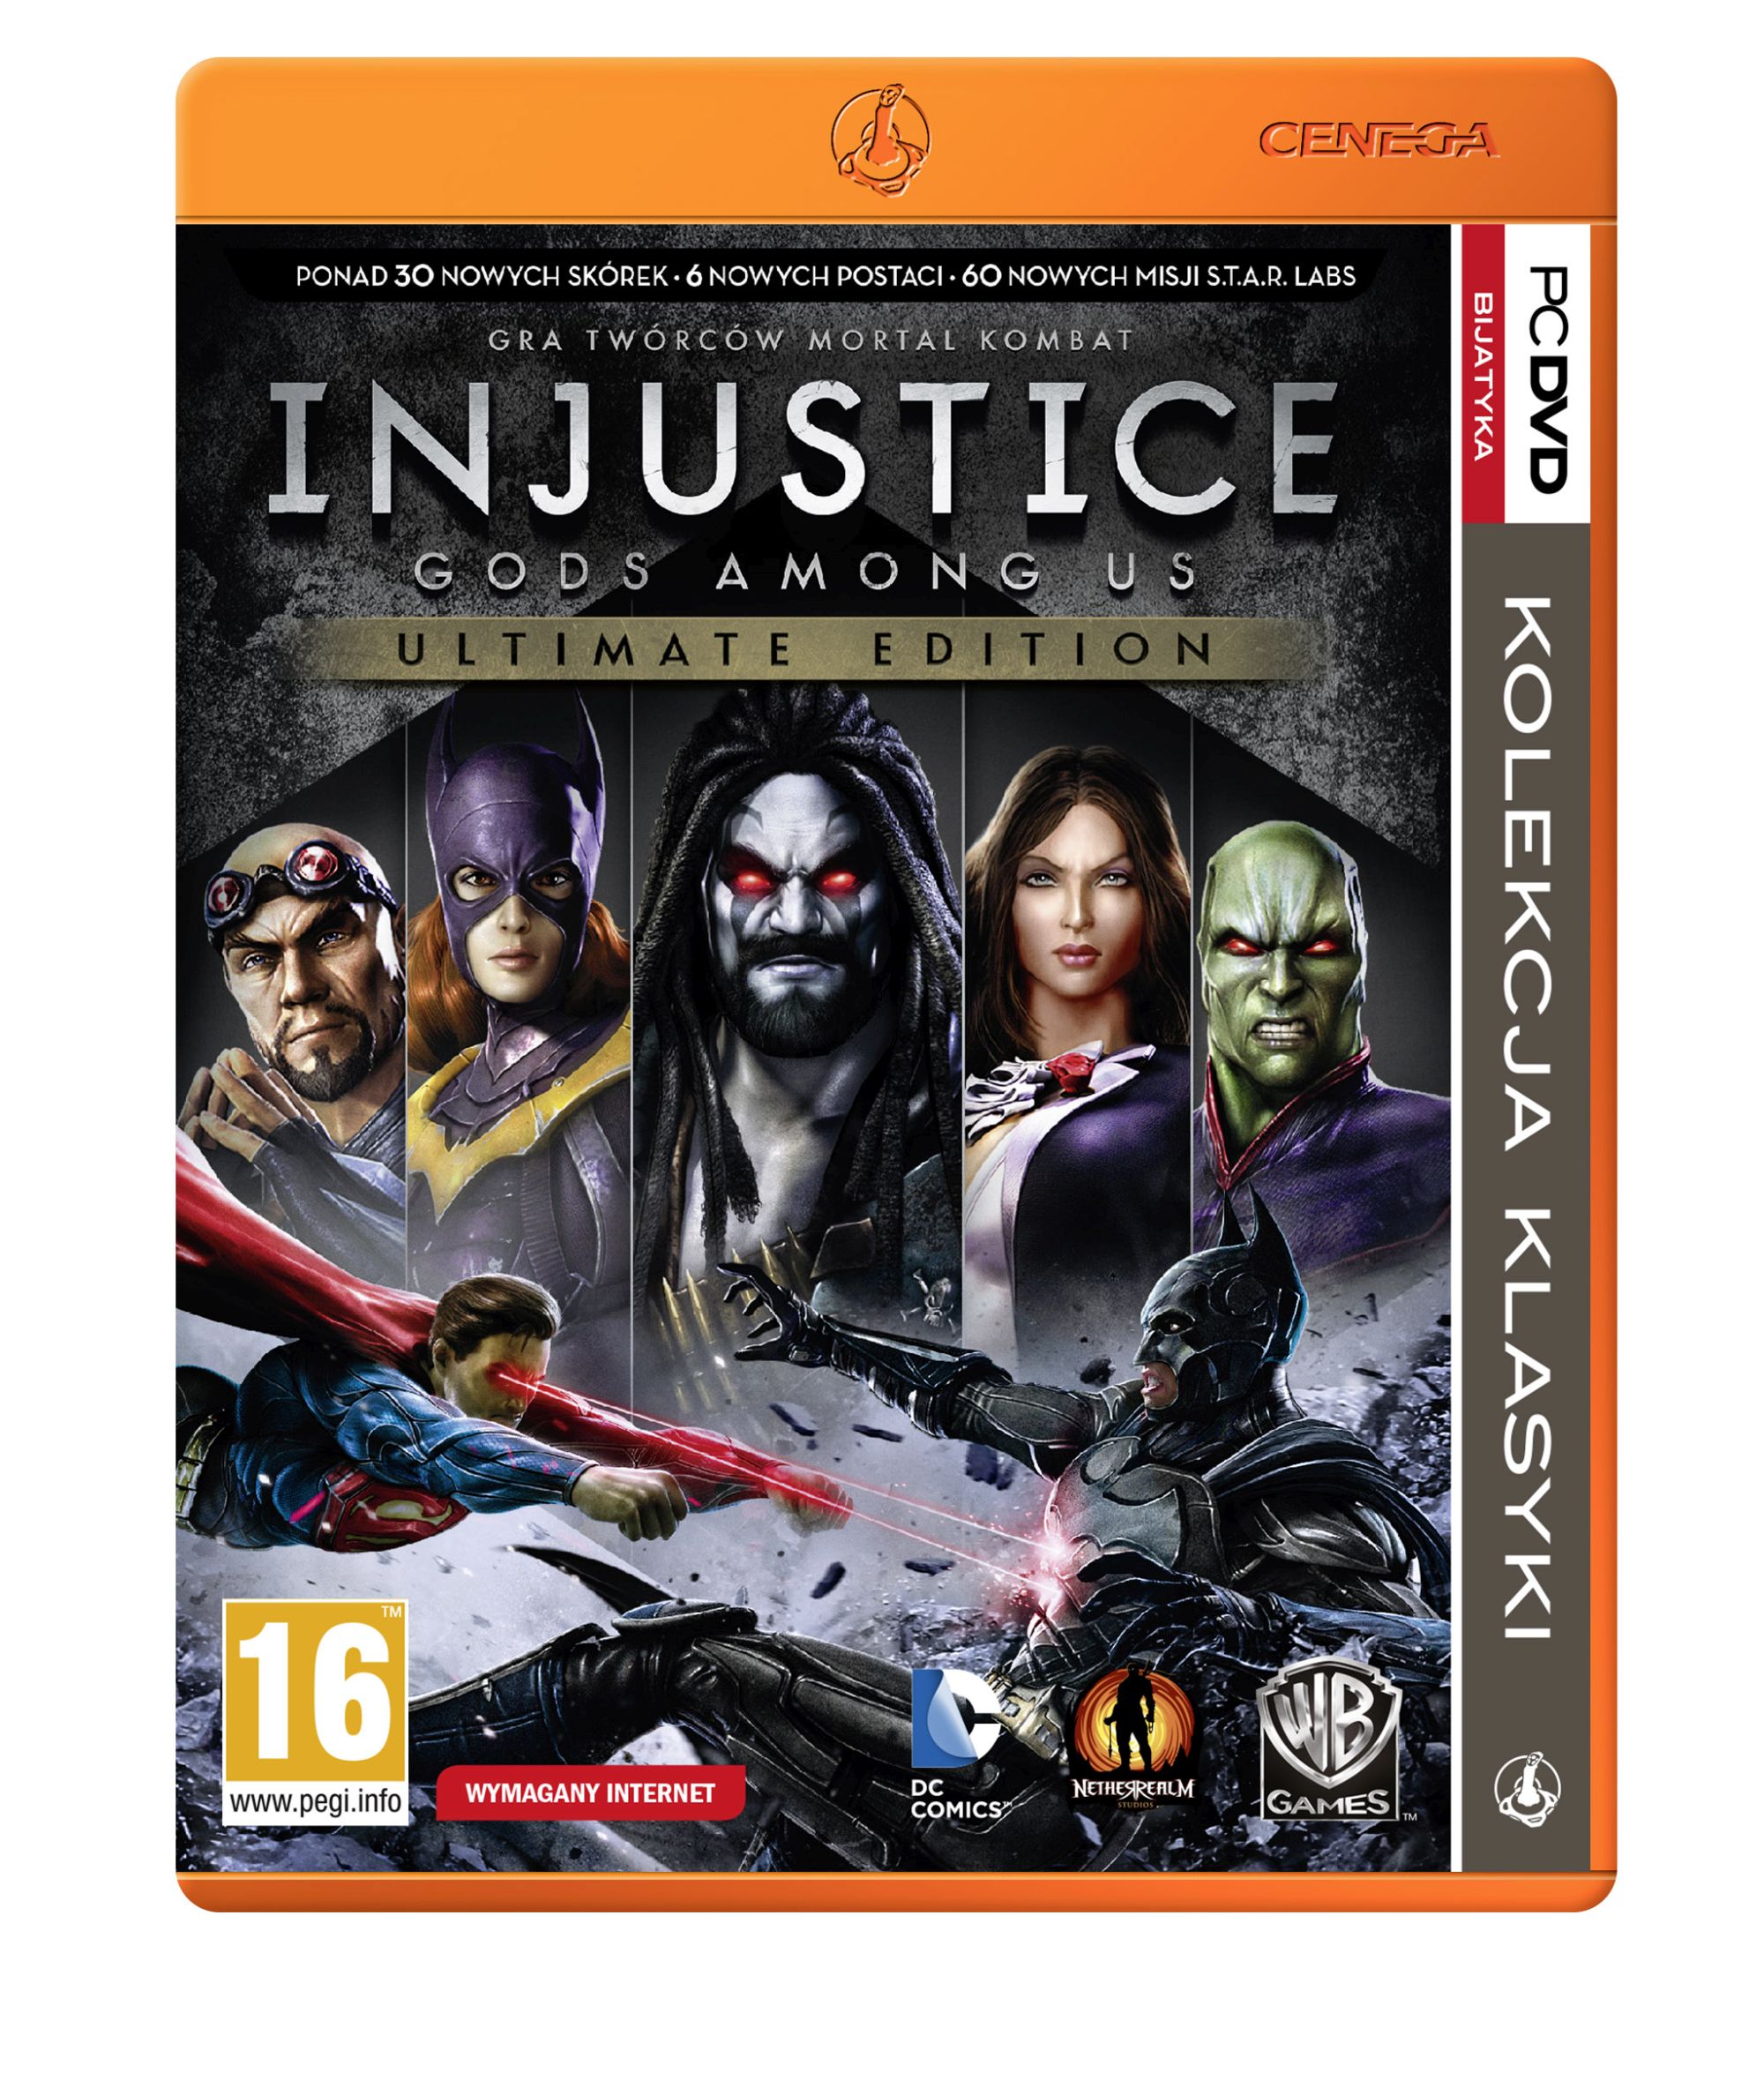 Okładka do Injustice: Gods Among Us Ultimate Edition